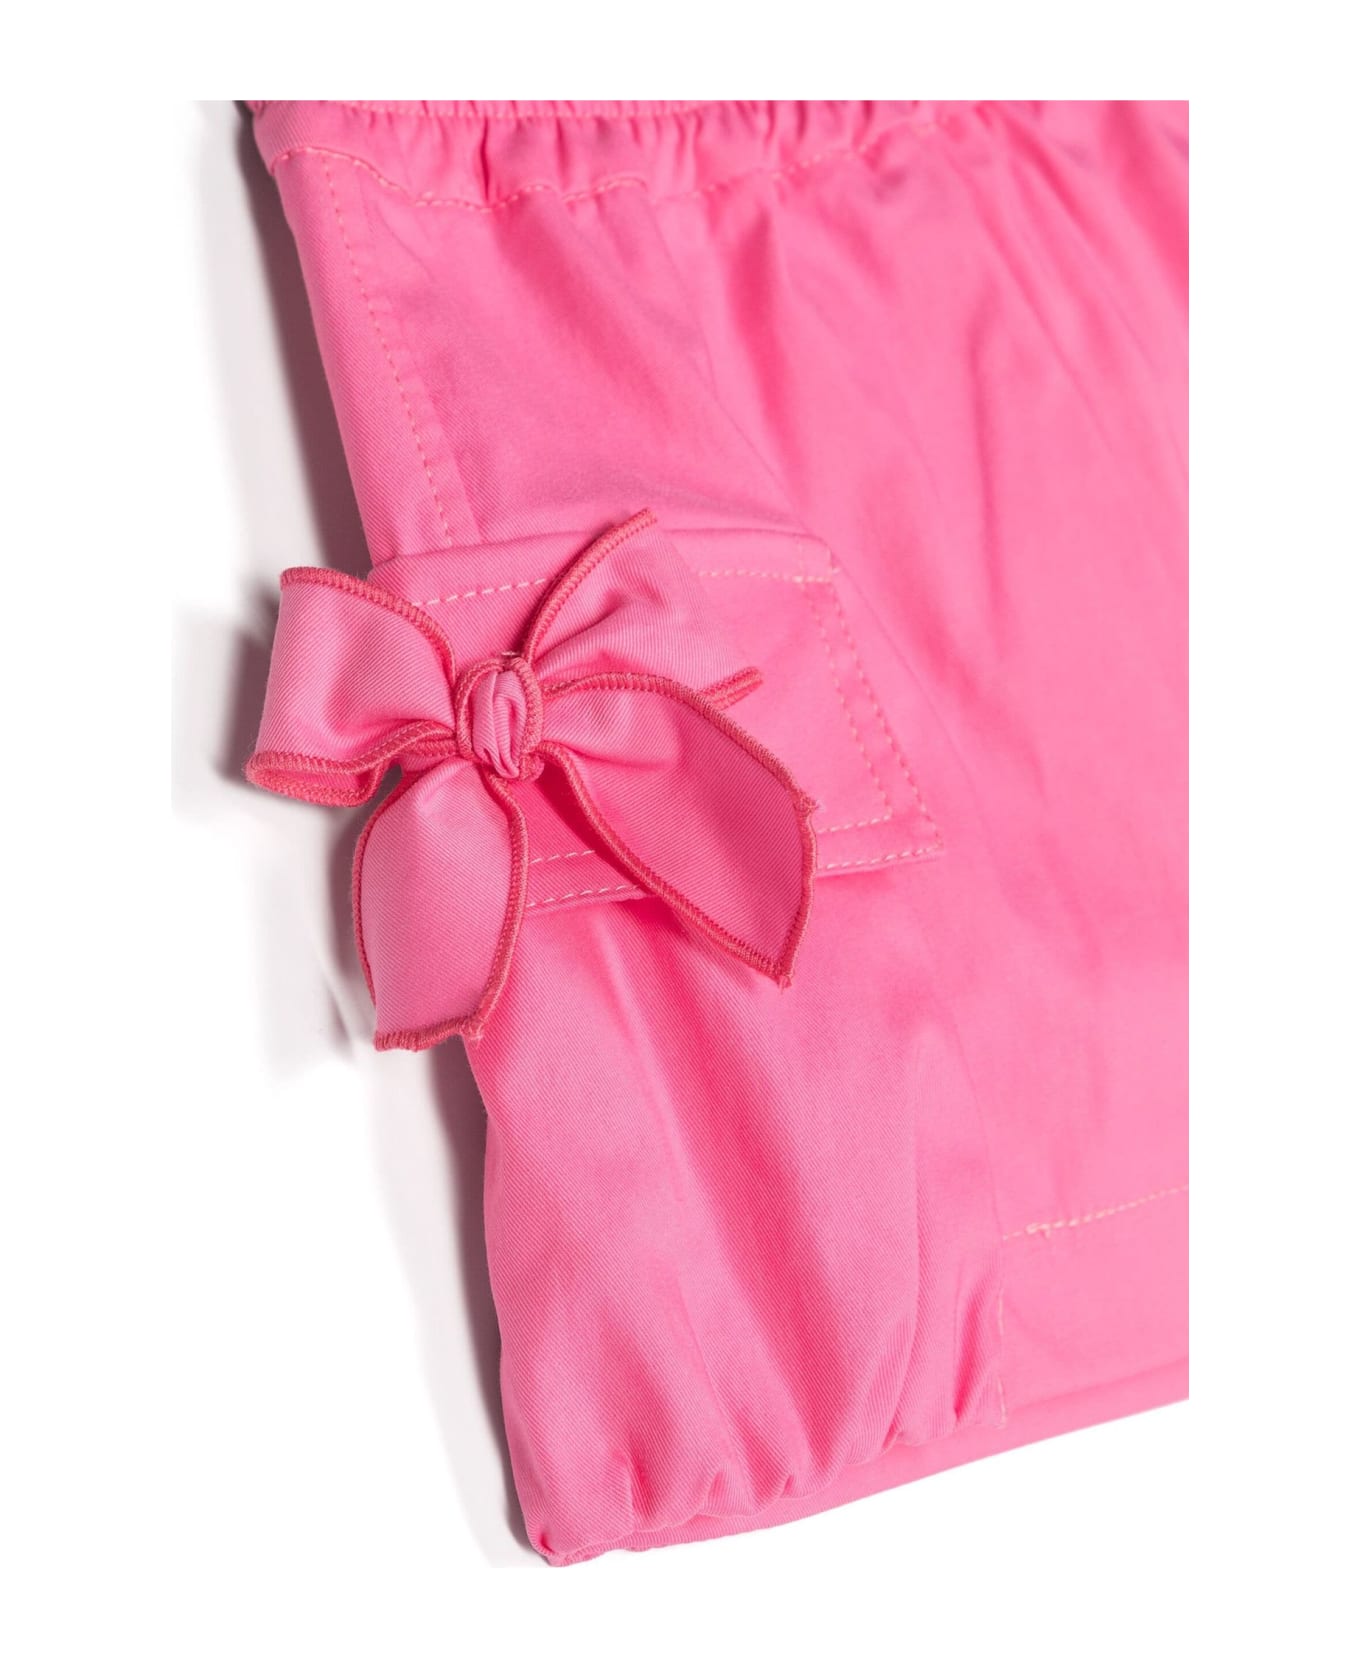 Monnalisa Shorts Pink - Pink